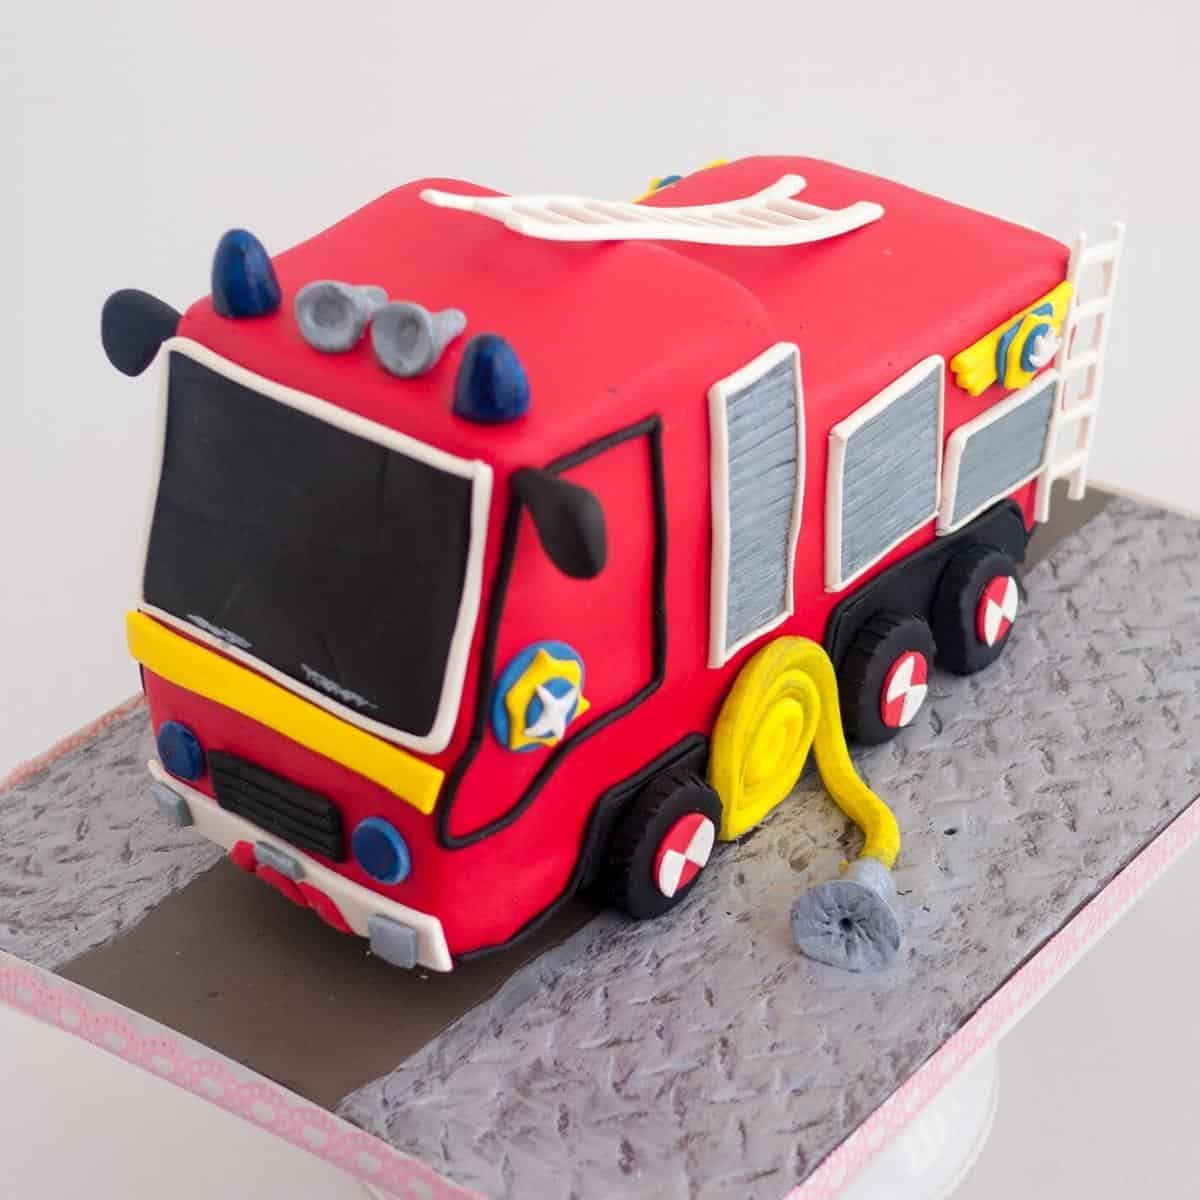 A fire engine cake on a cake board.